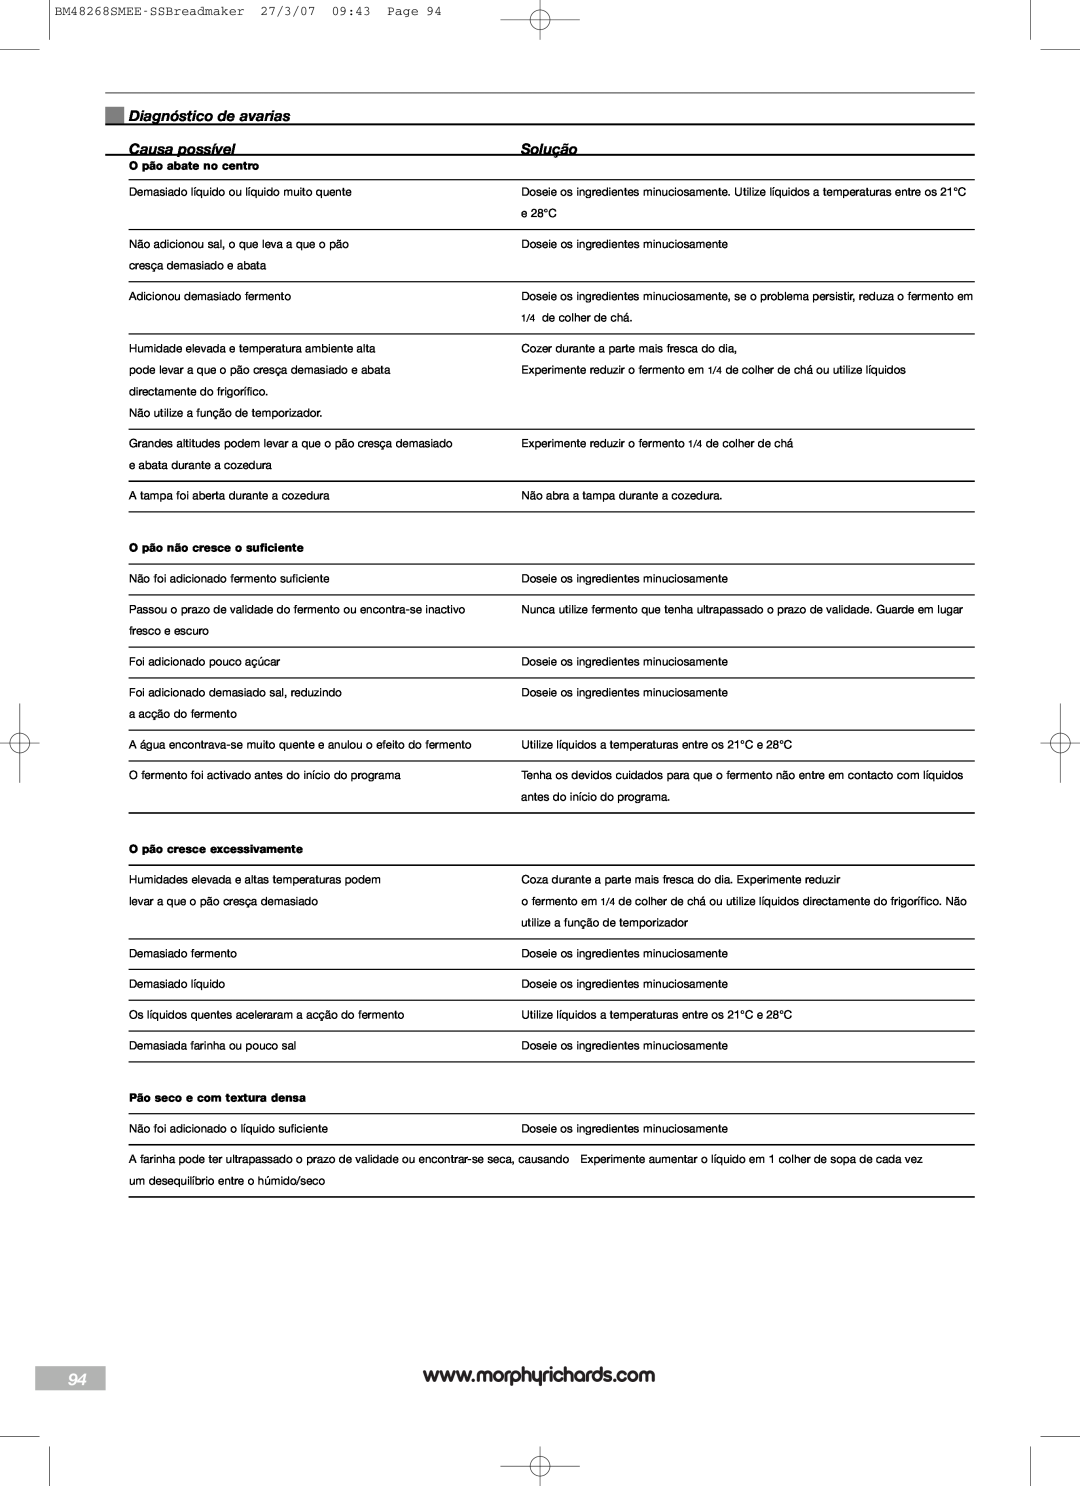 Morphy Richards manual Diagnóstico de avarias, Causa possível, Solução, BM48268SMEE-SSBreadmaker27/3/07 09:43 Page 